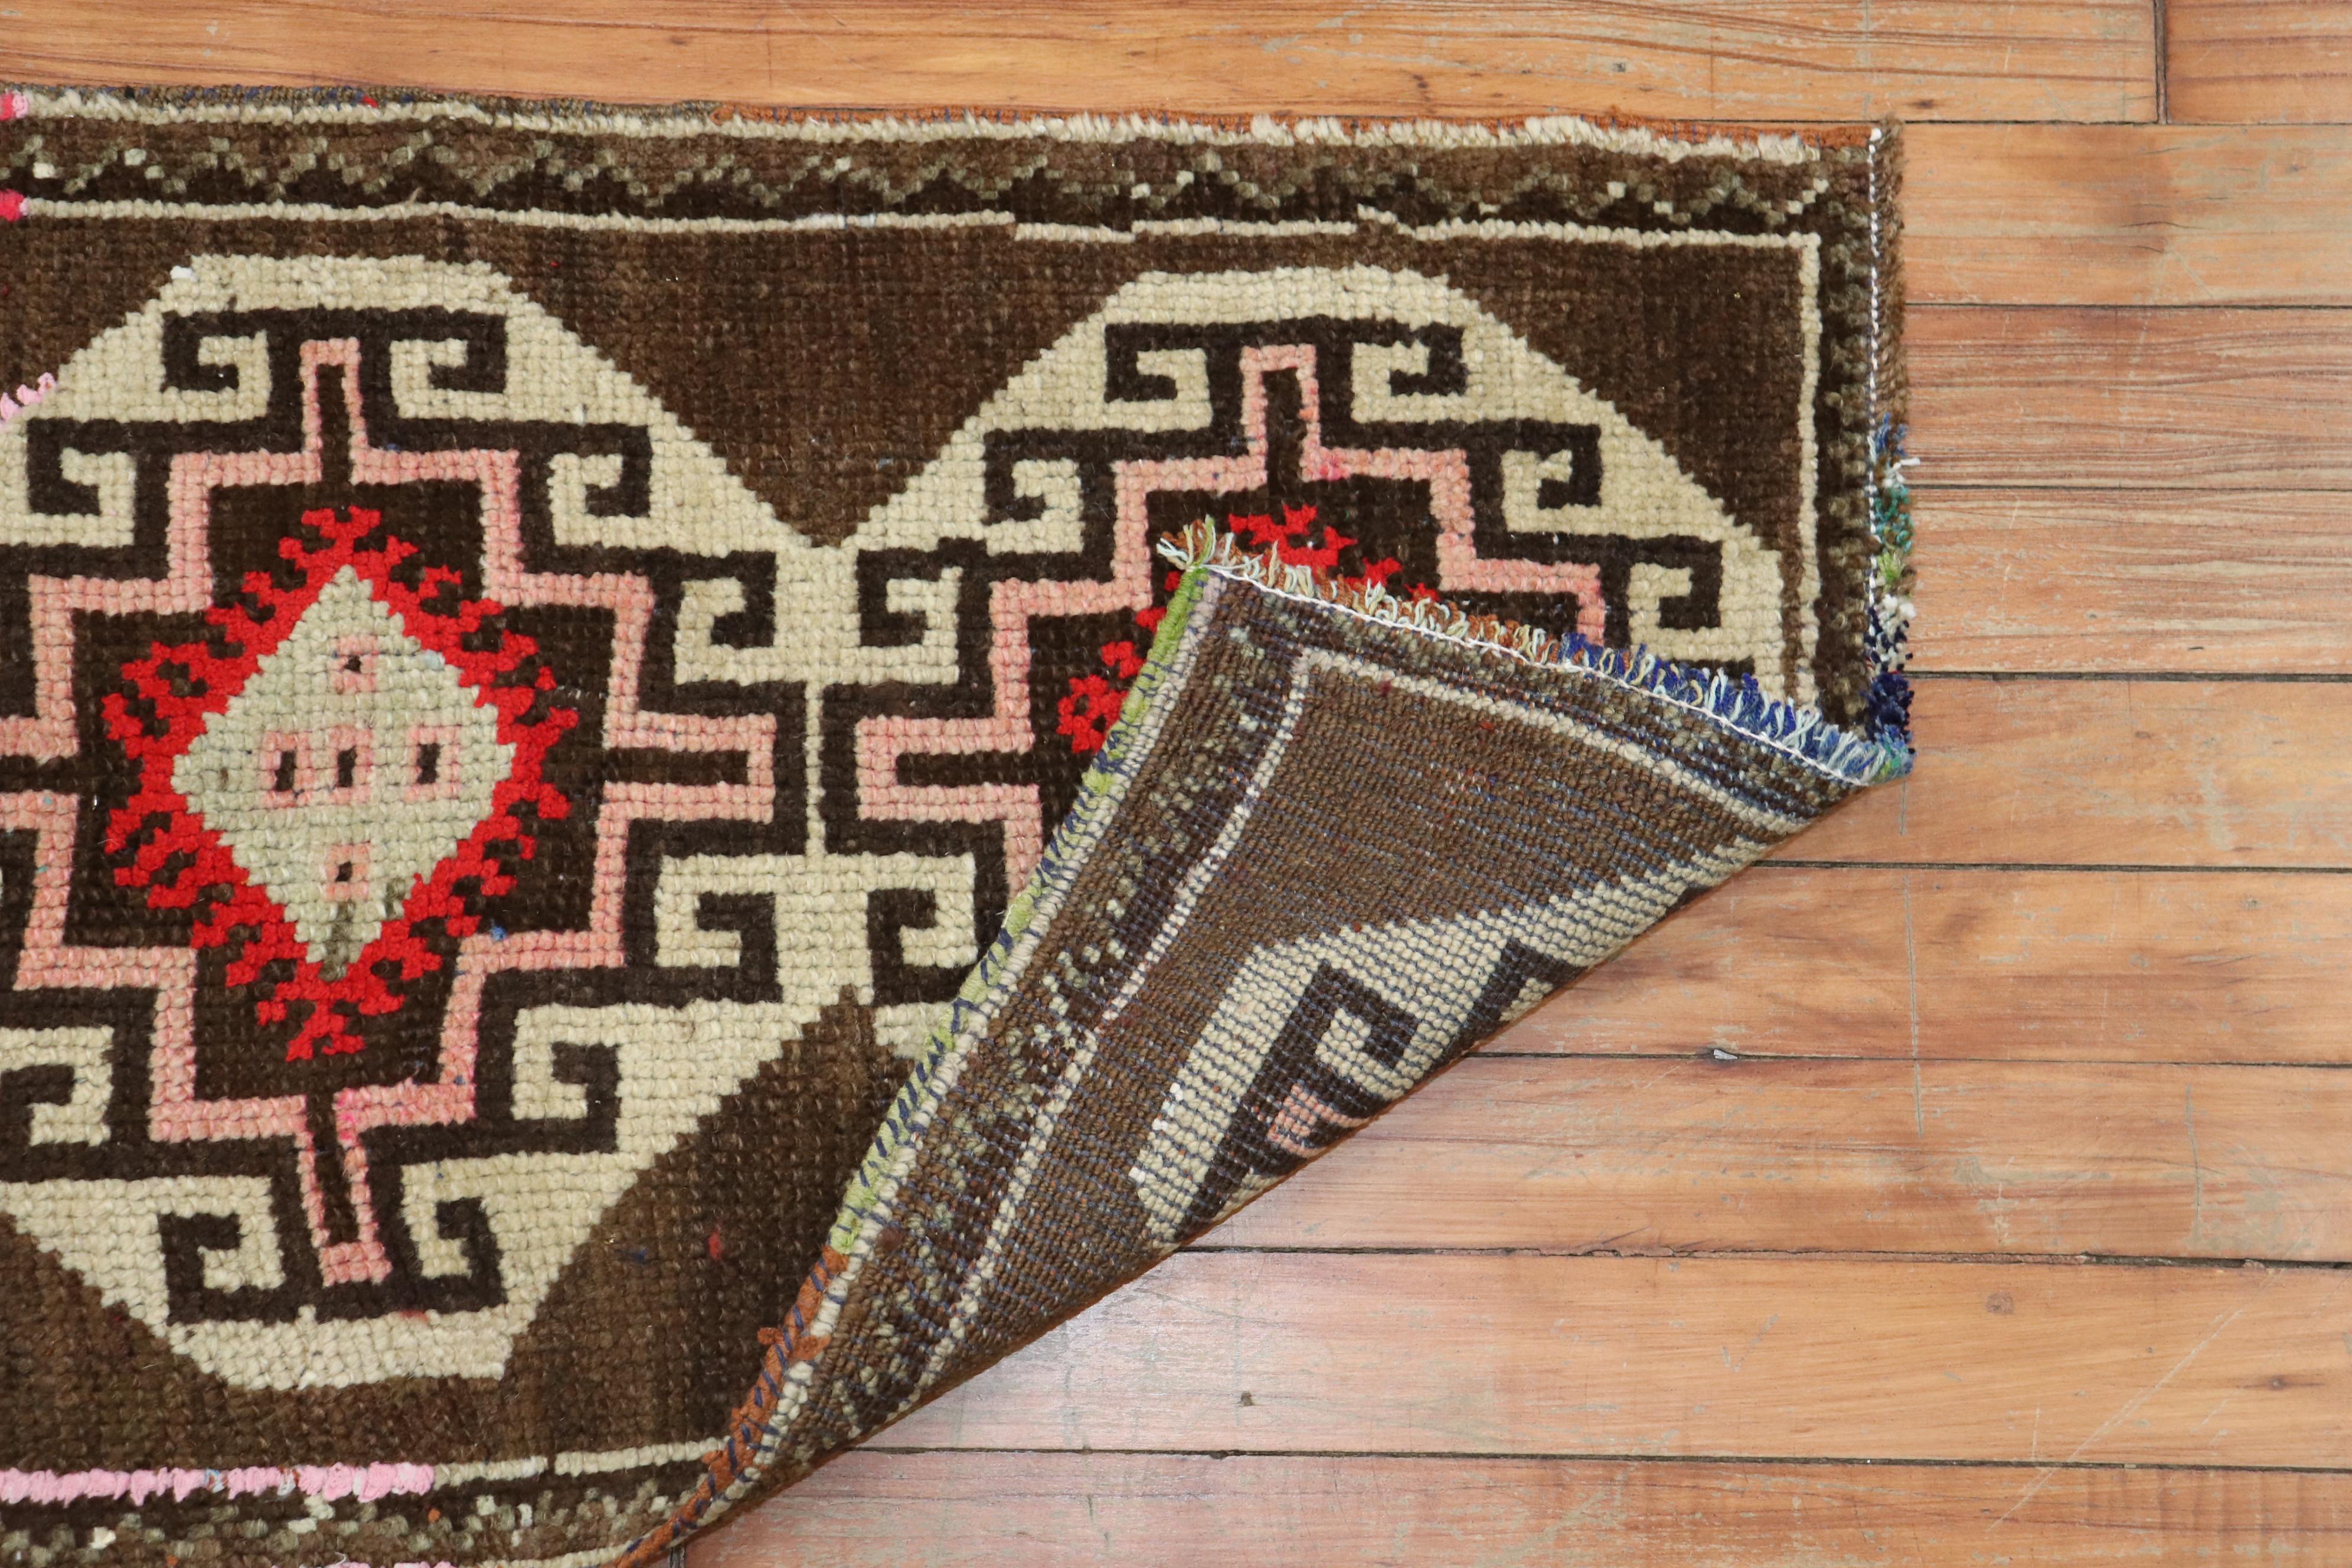 Ein passendes Paar türkischer anatolischer Teppiche aus der Mitte des 20. Jahrhunderts mit einem Stammesmotiv in Rot und Weiß auf einem schokoladenbraunen Feld

Sie messen 18